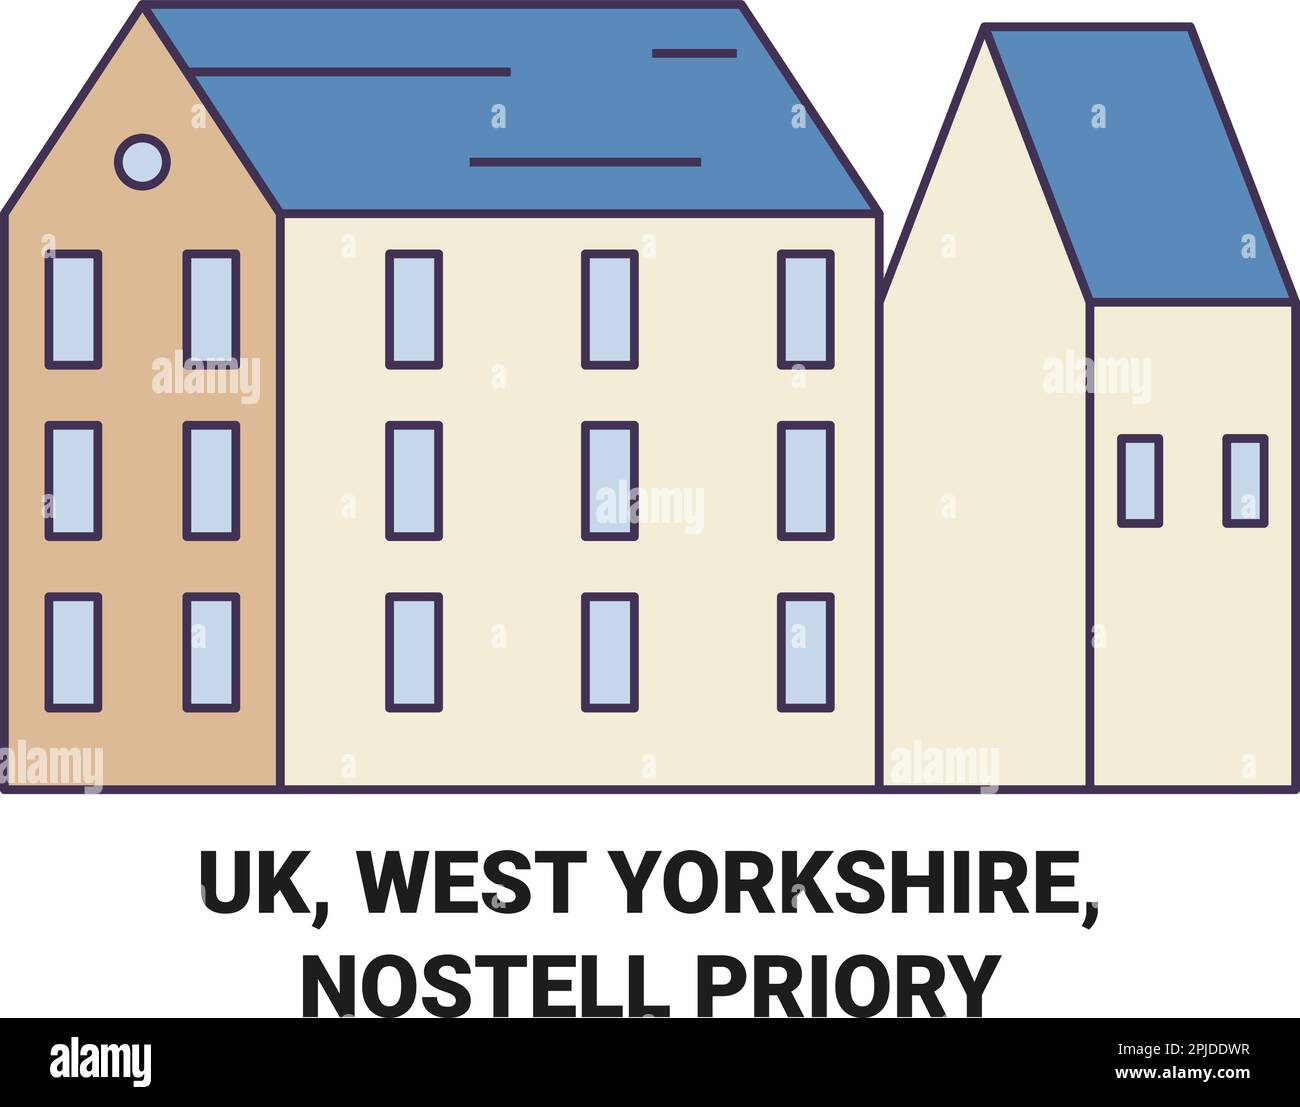 Uk, West Yorkshire, Nostell Priory travel landmark vector illustration Stock Vector